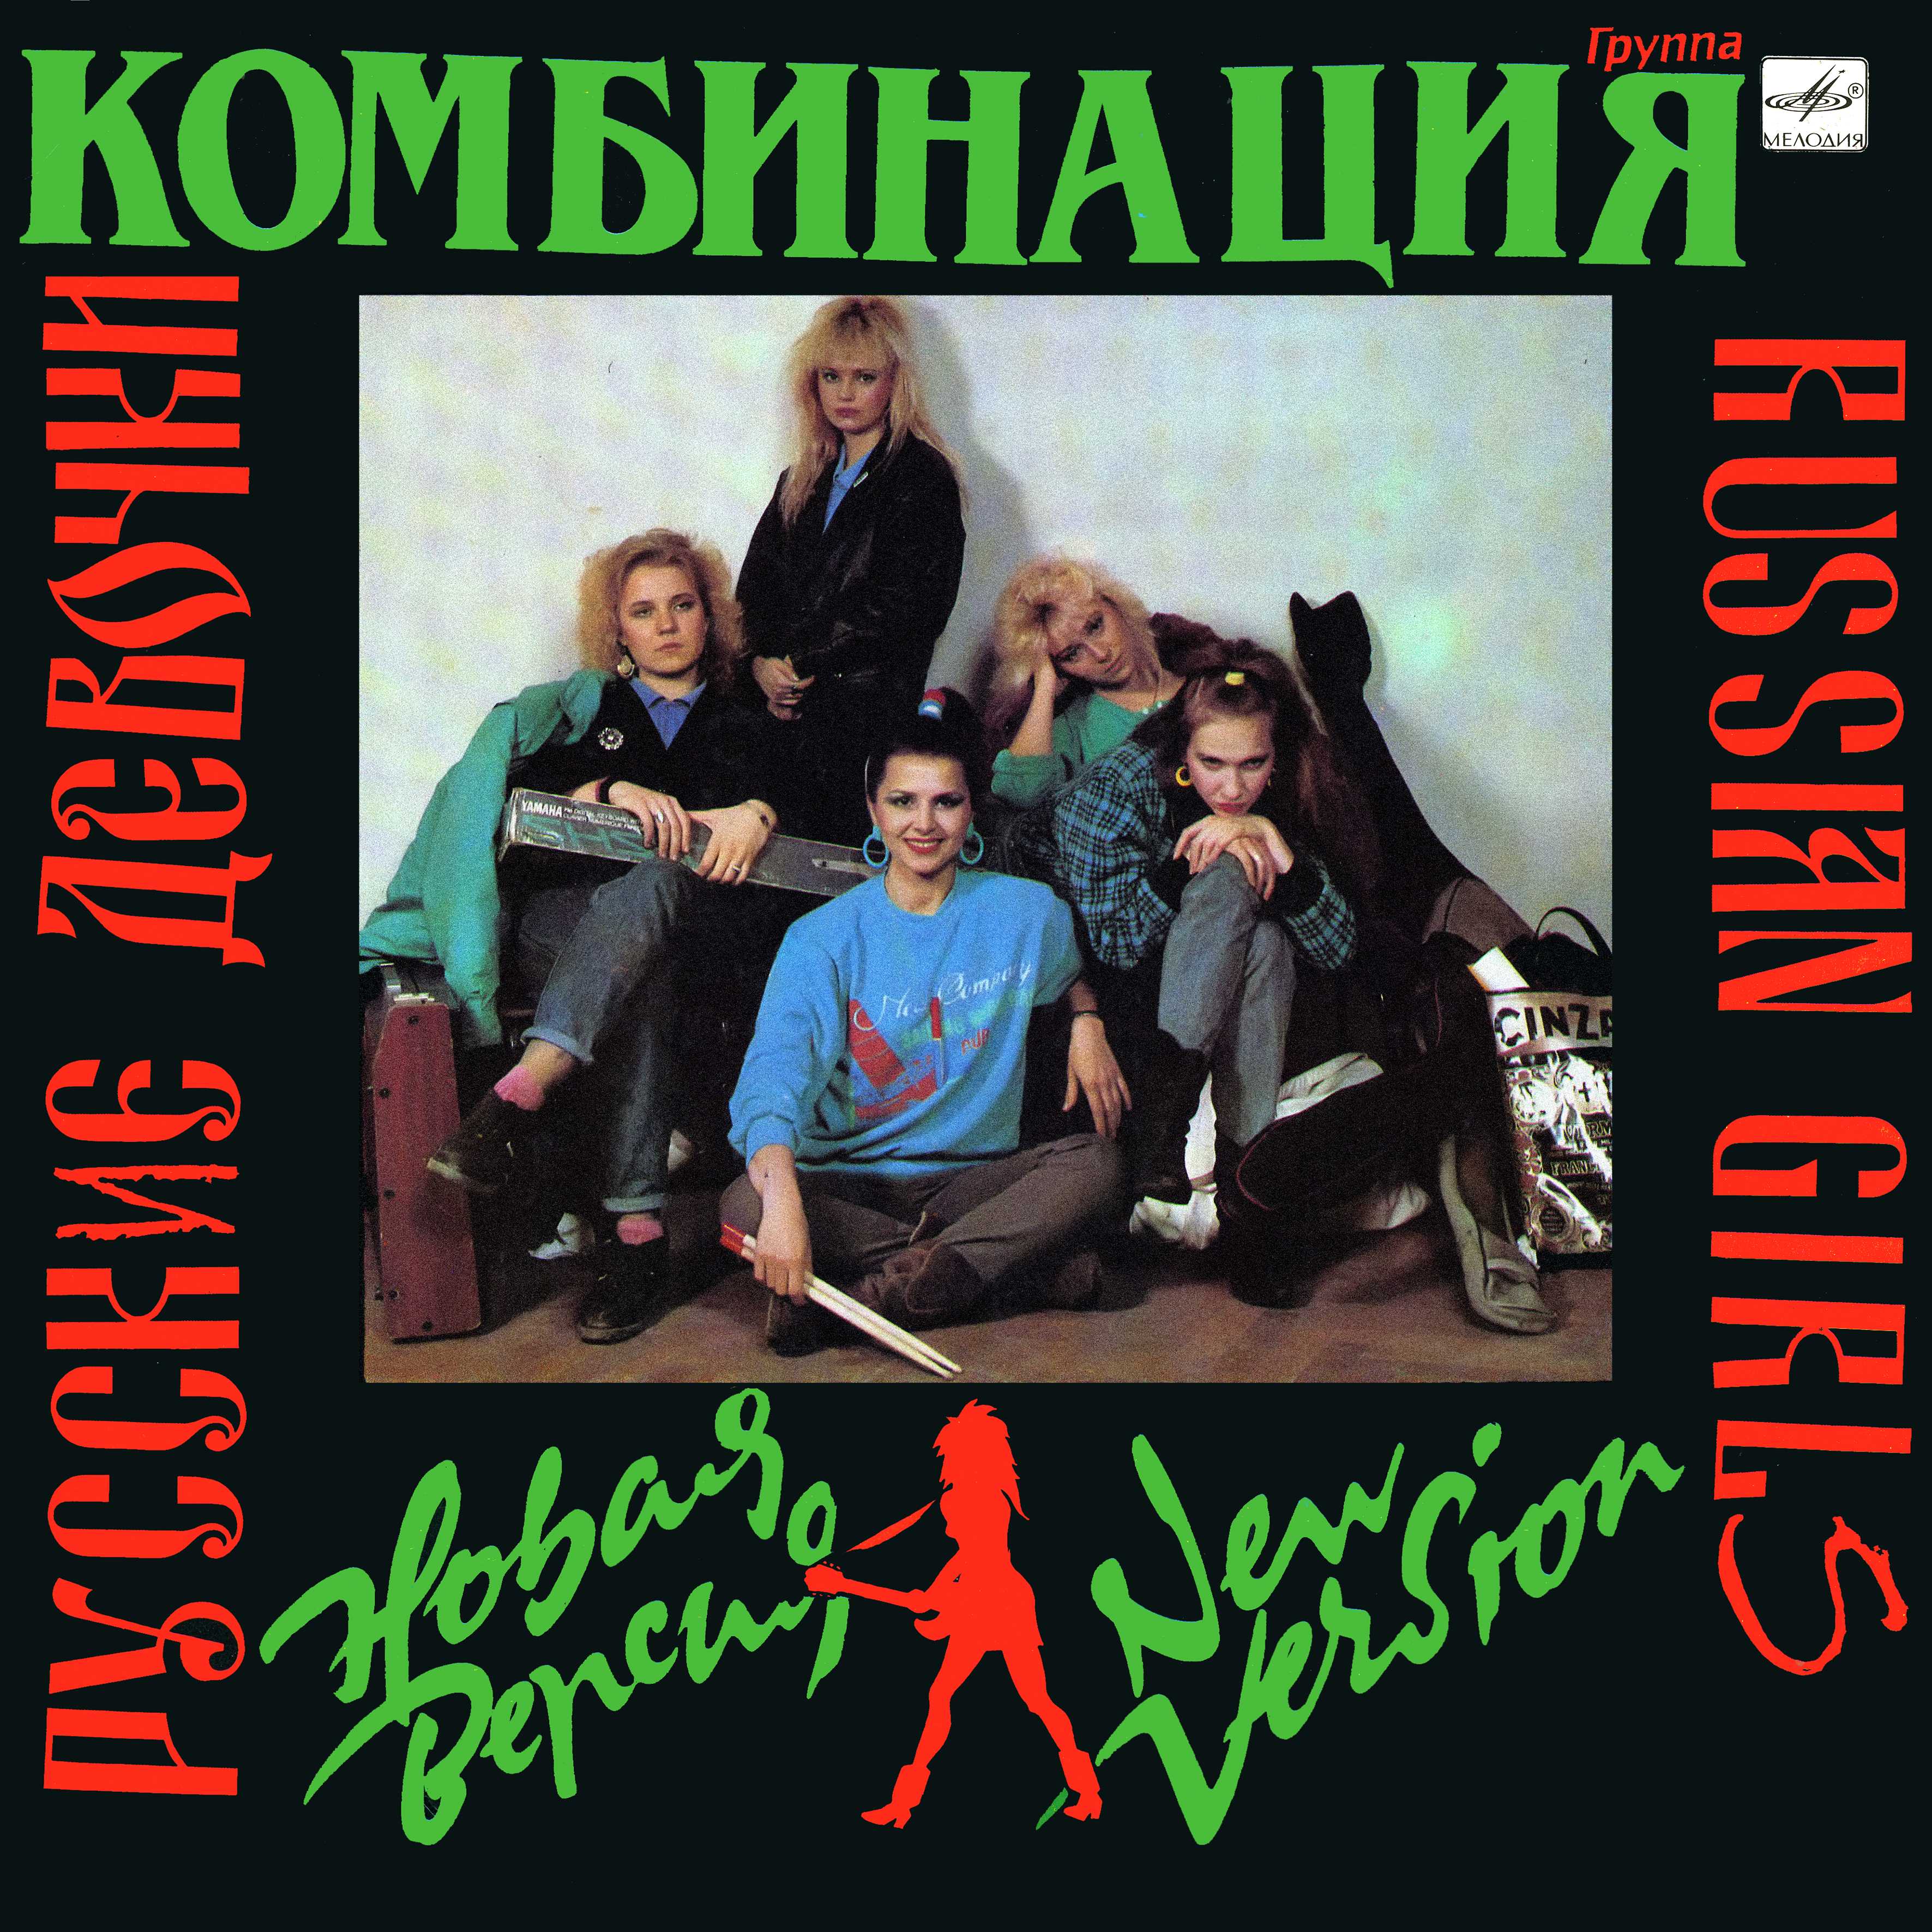 Группа "Комбинация" - Русские девочки. Новая версия